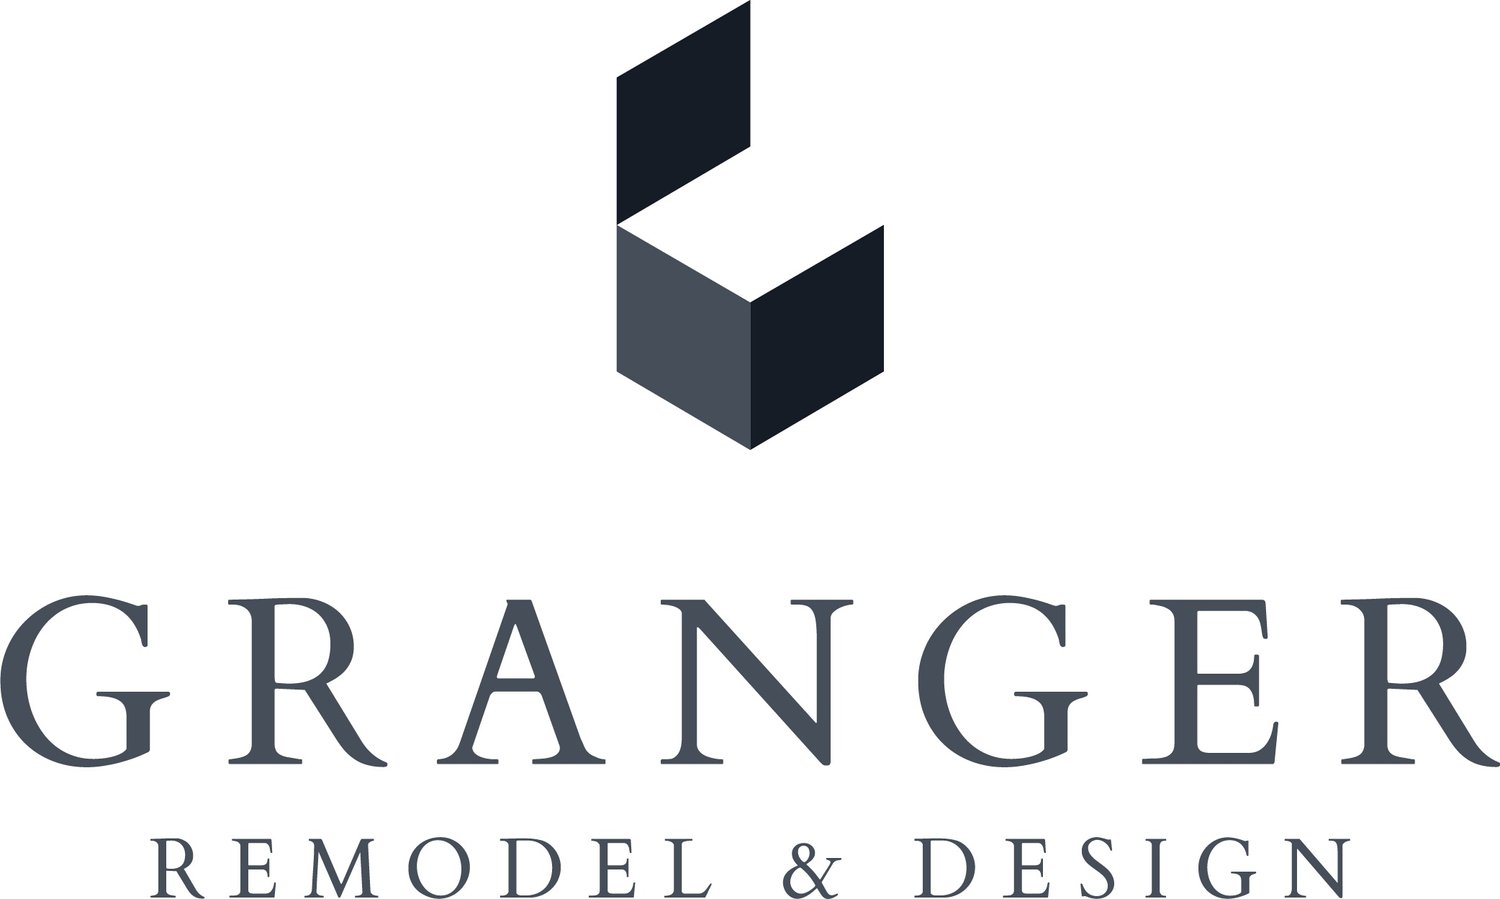 Granger Remodel & Design